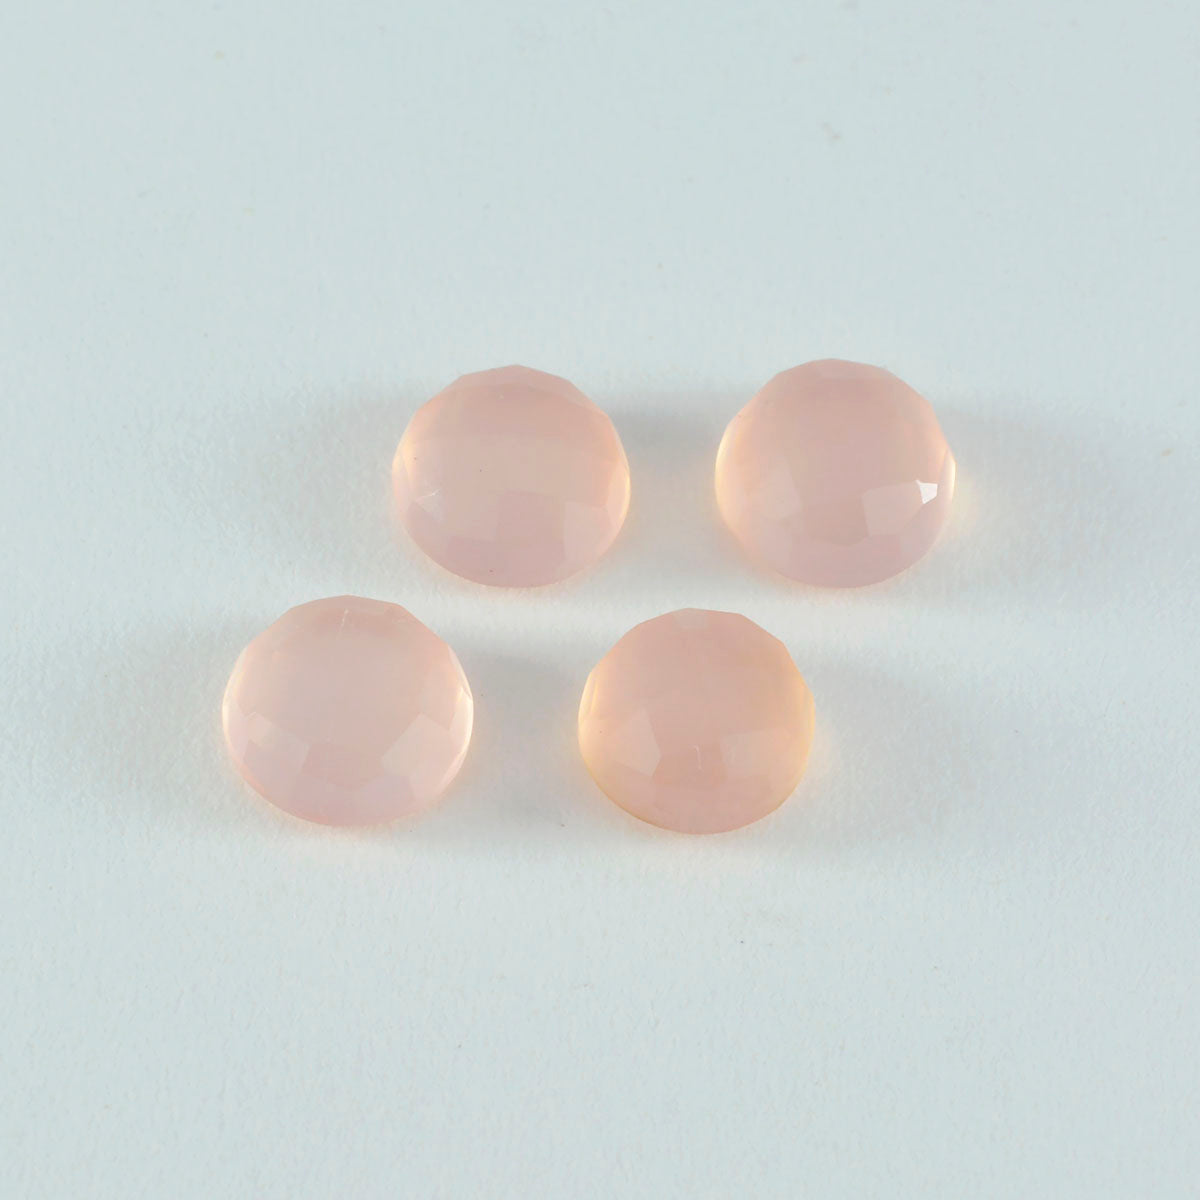 Riyogems 1 pièce de quartz rose à facettes 14x14mm, forme ronde, belle qualité, pierre précieuse en vrac